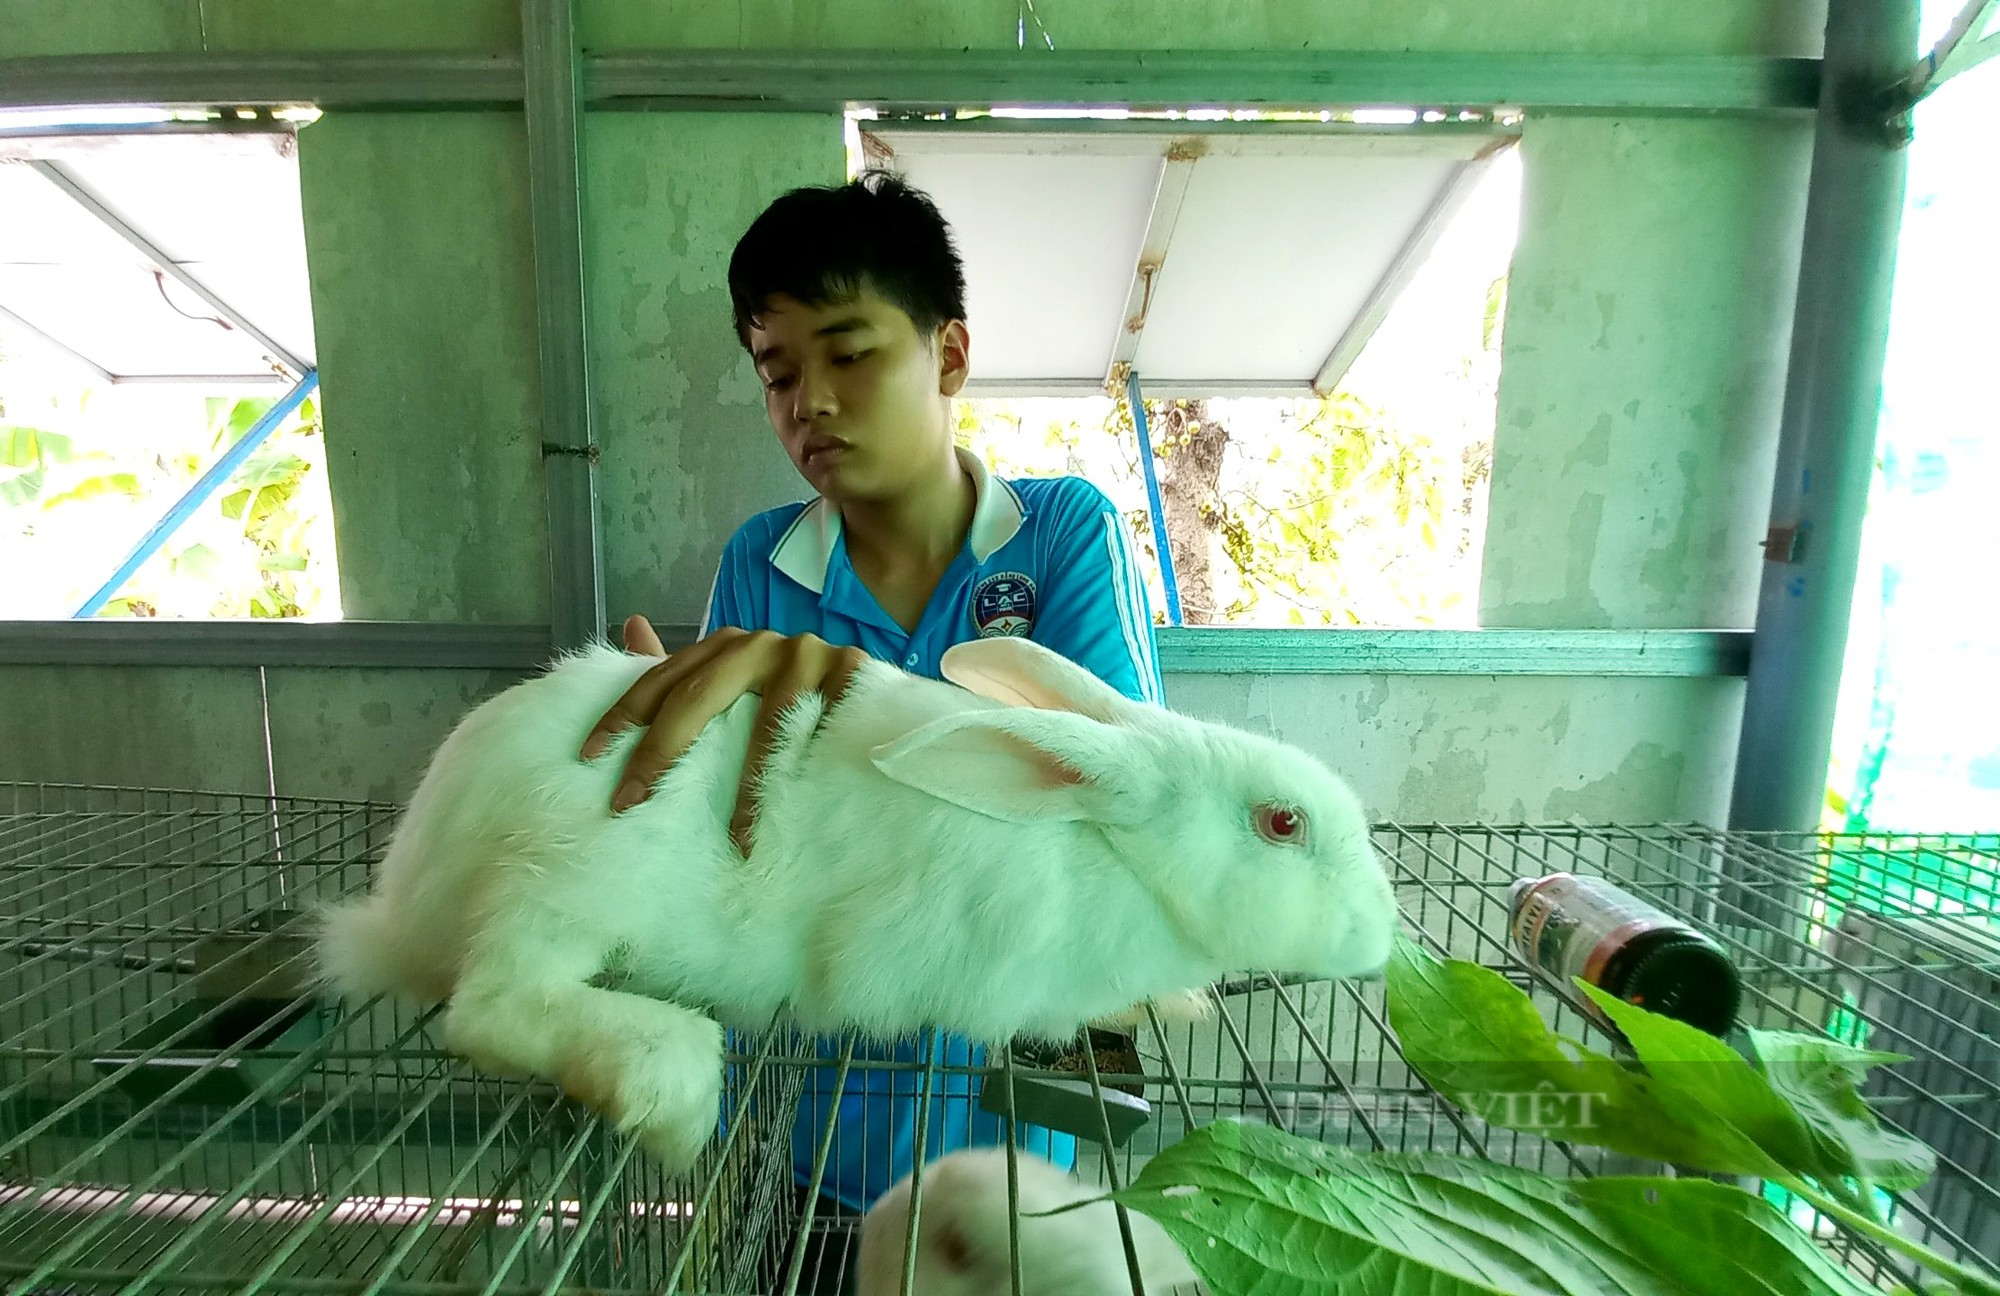 “Nông dân thế hệ Z” đi học thú y, mở trại nuôi thỏ công nghiệp, thong dong thu tiền lời  - Ảnh 5.